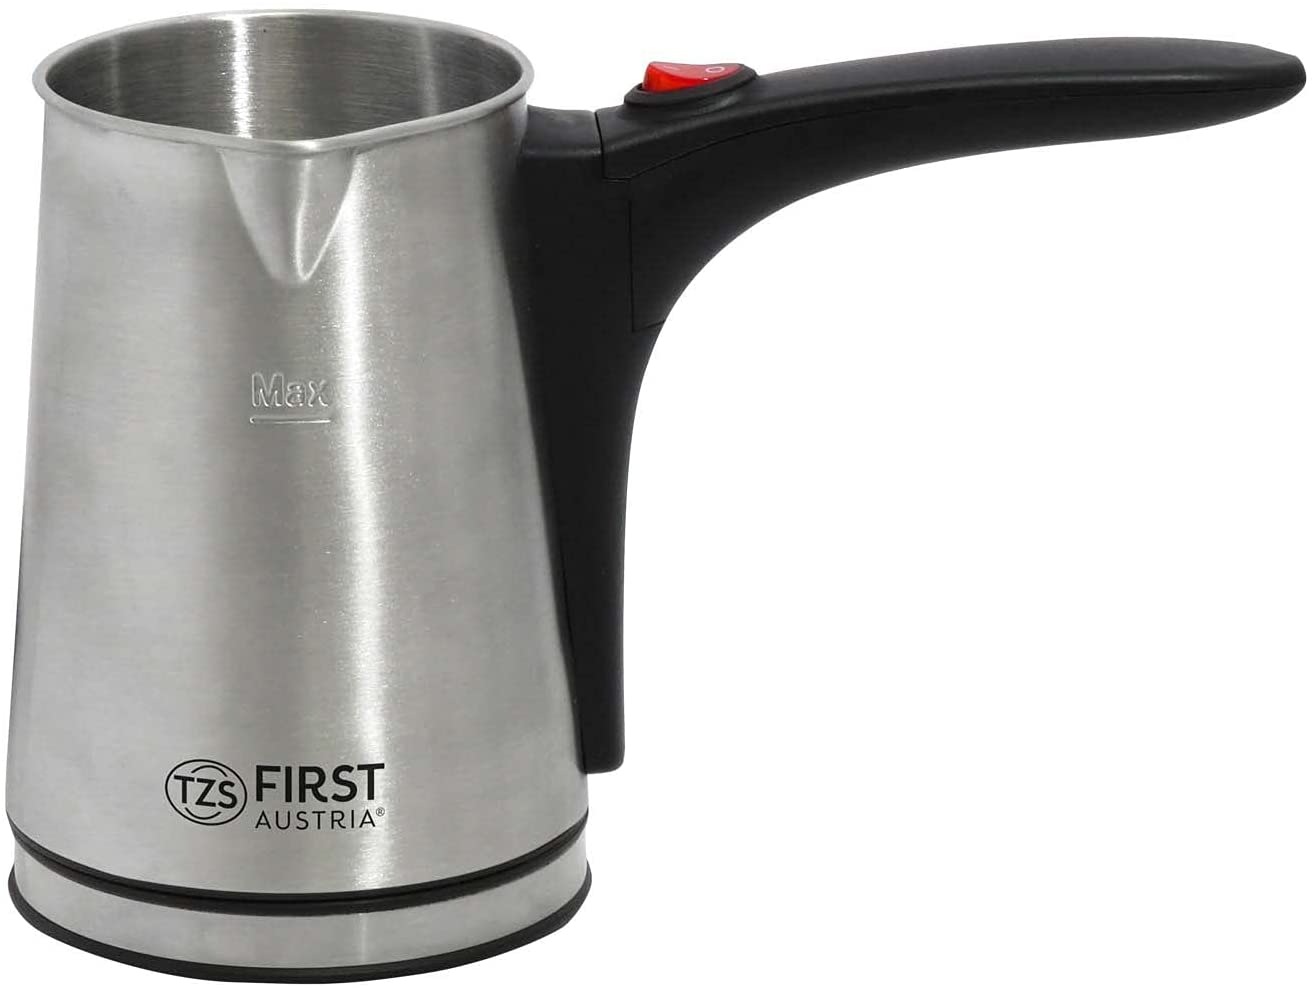 TZS FIRST AUSTRIA TURKISH COFFEE MACHINE 0,35 L / 800W FA - 5450–1